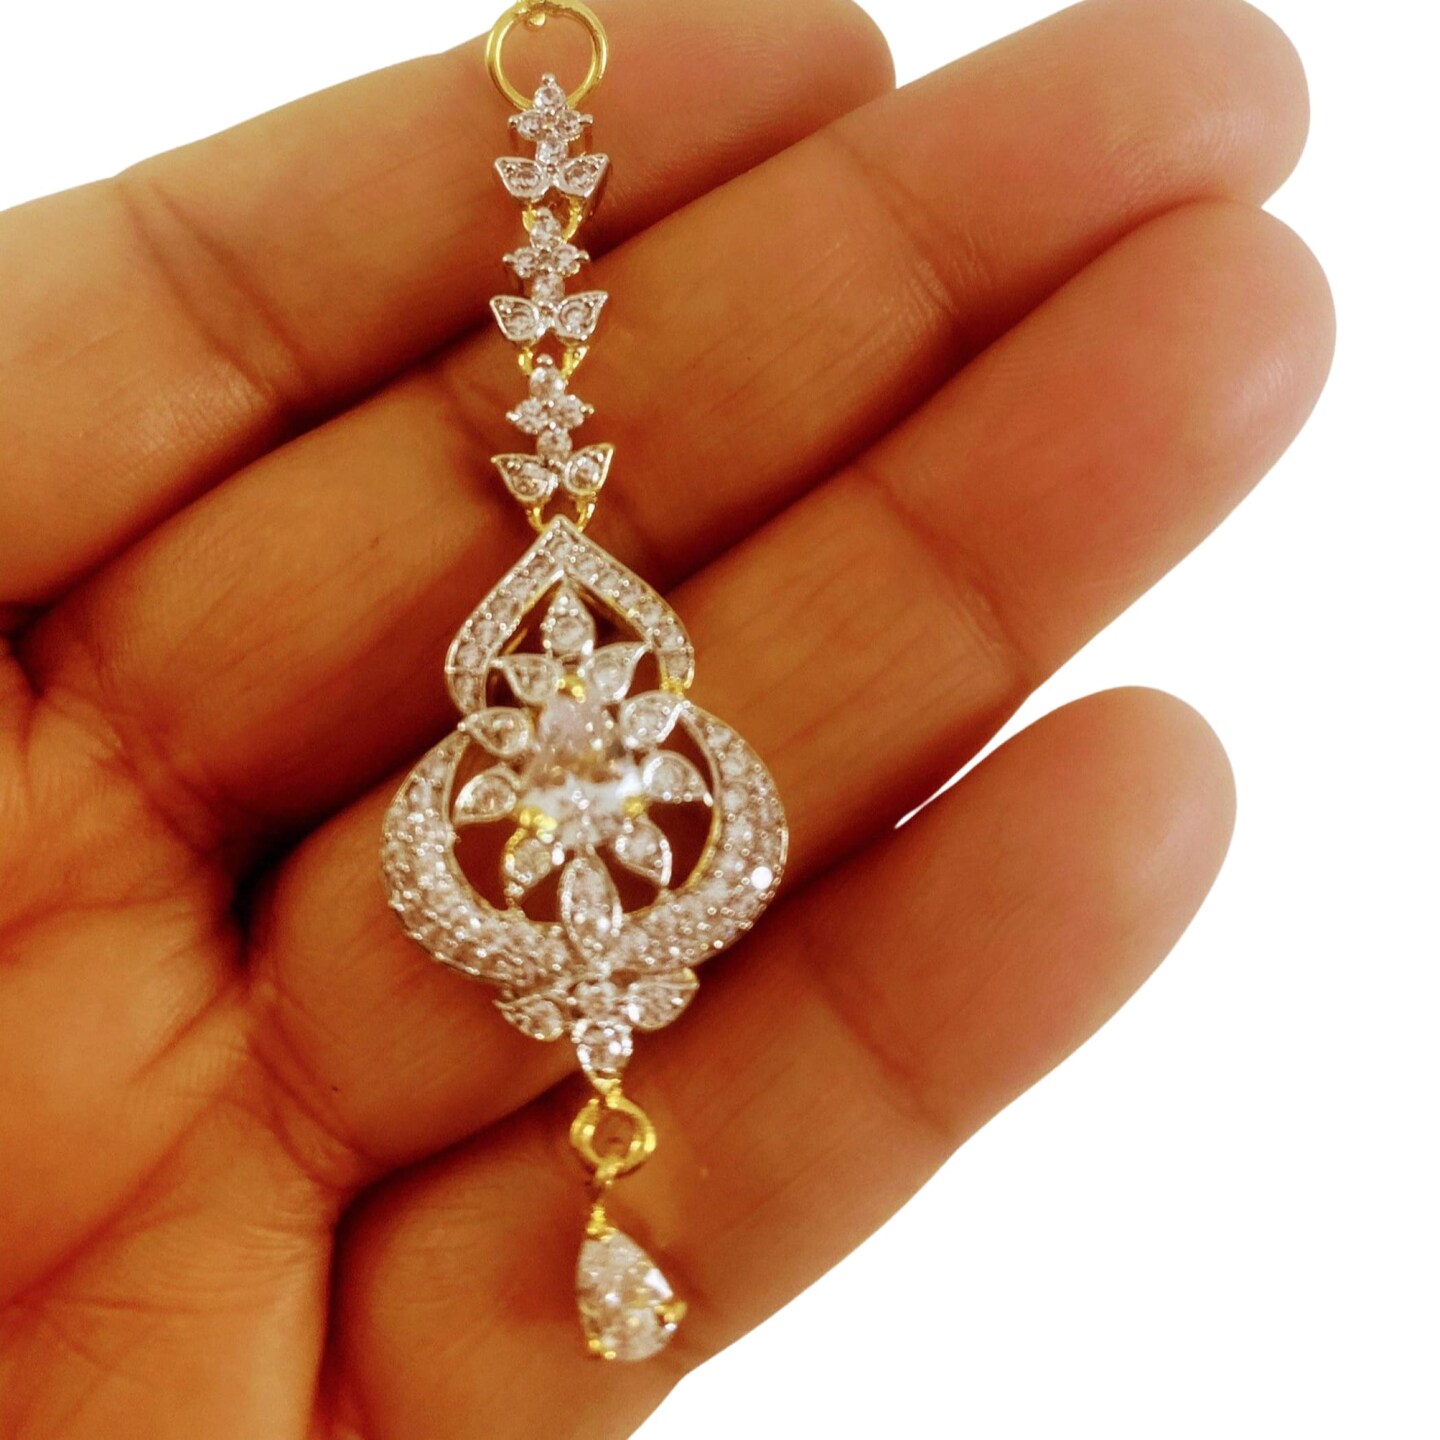 1 Ct Small American Diamond Maang Tikka, Maang Tikka, Gold Plated Maang Tika, Pakistani Jewelry, Jhoomer, Matha Patti, Indian Forehead Jewelry